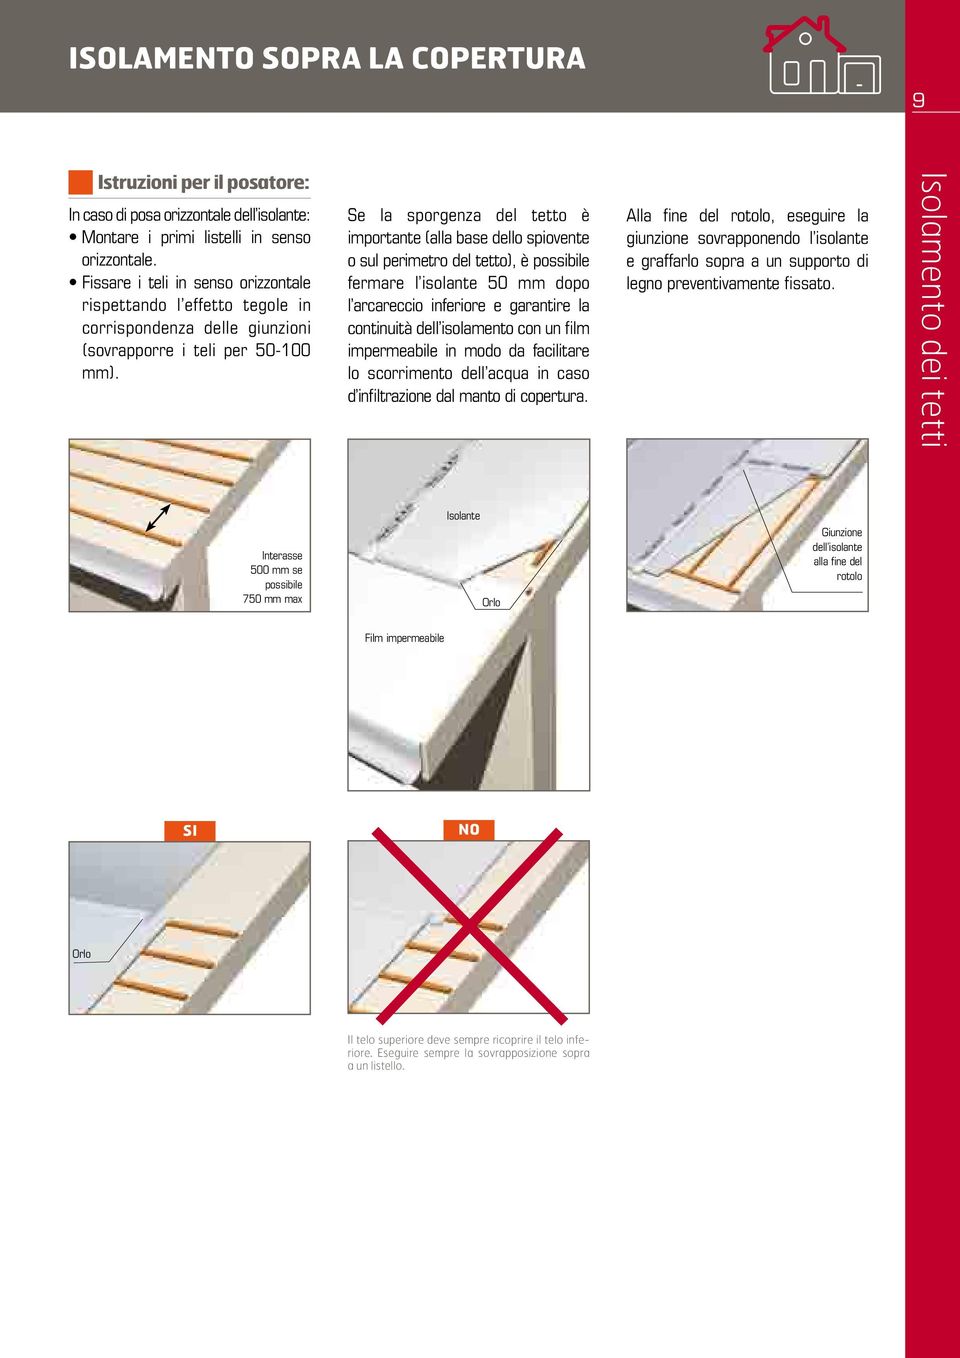 Se la sporgenza del tetto è importante (alla base dello spiovente o sul perimetro del tetto), è possibile fermare l isolante 50 mm dopo l arcareccio inferiore e garantire la continuità dell